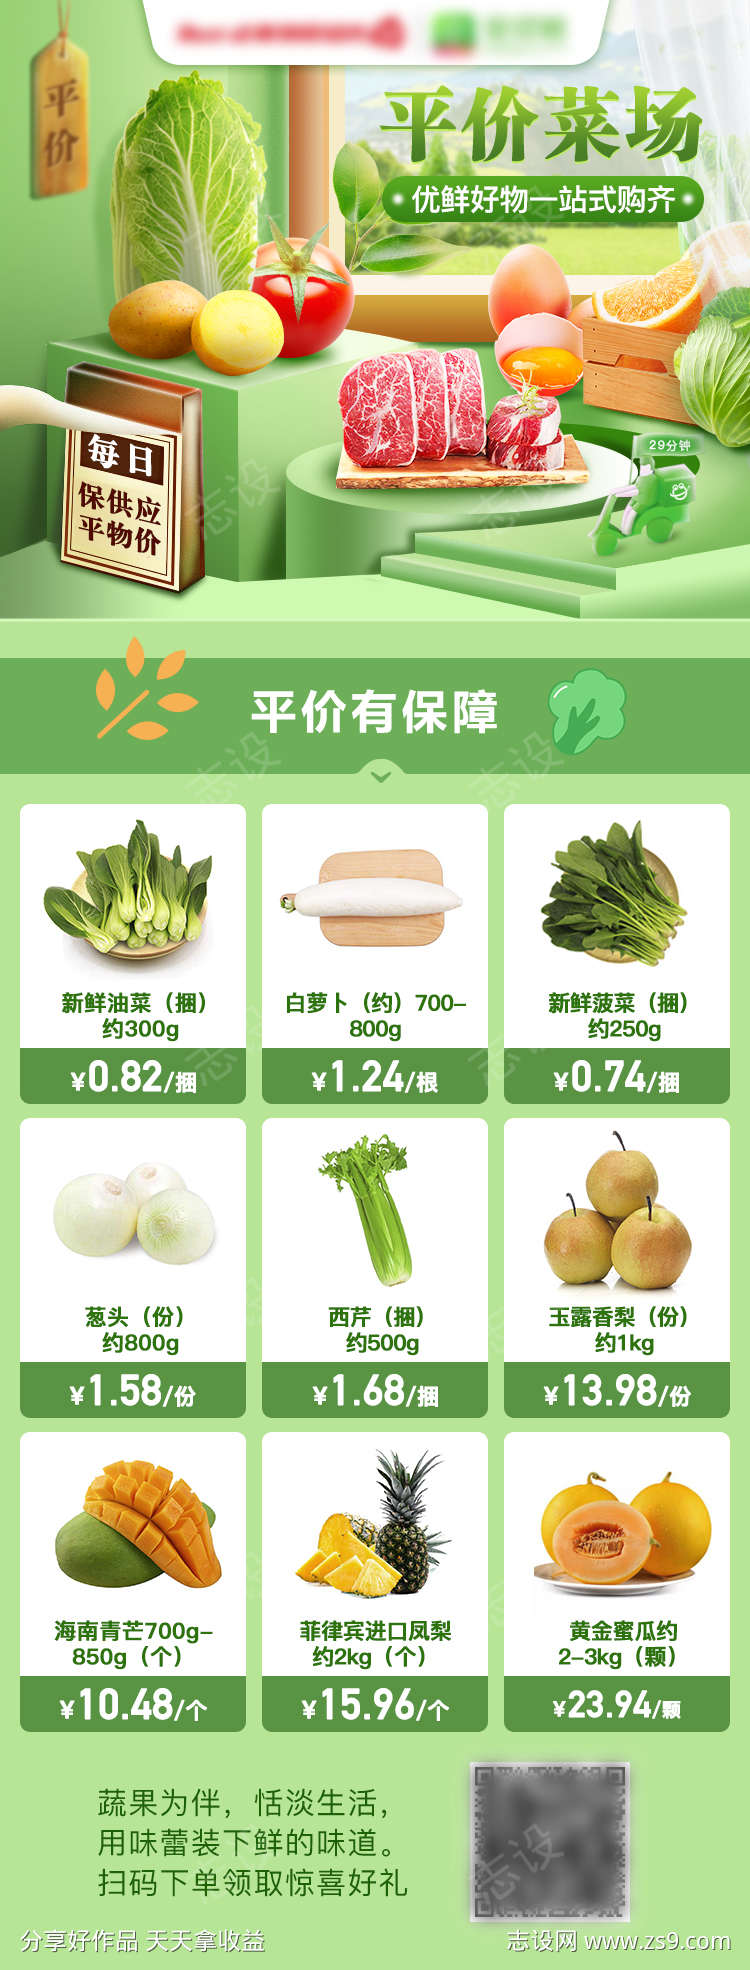 蔬菜电商海报